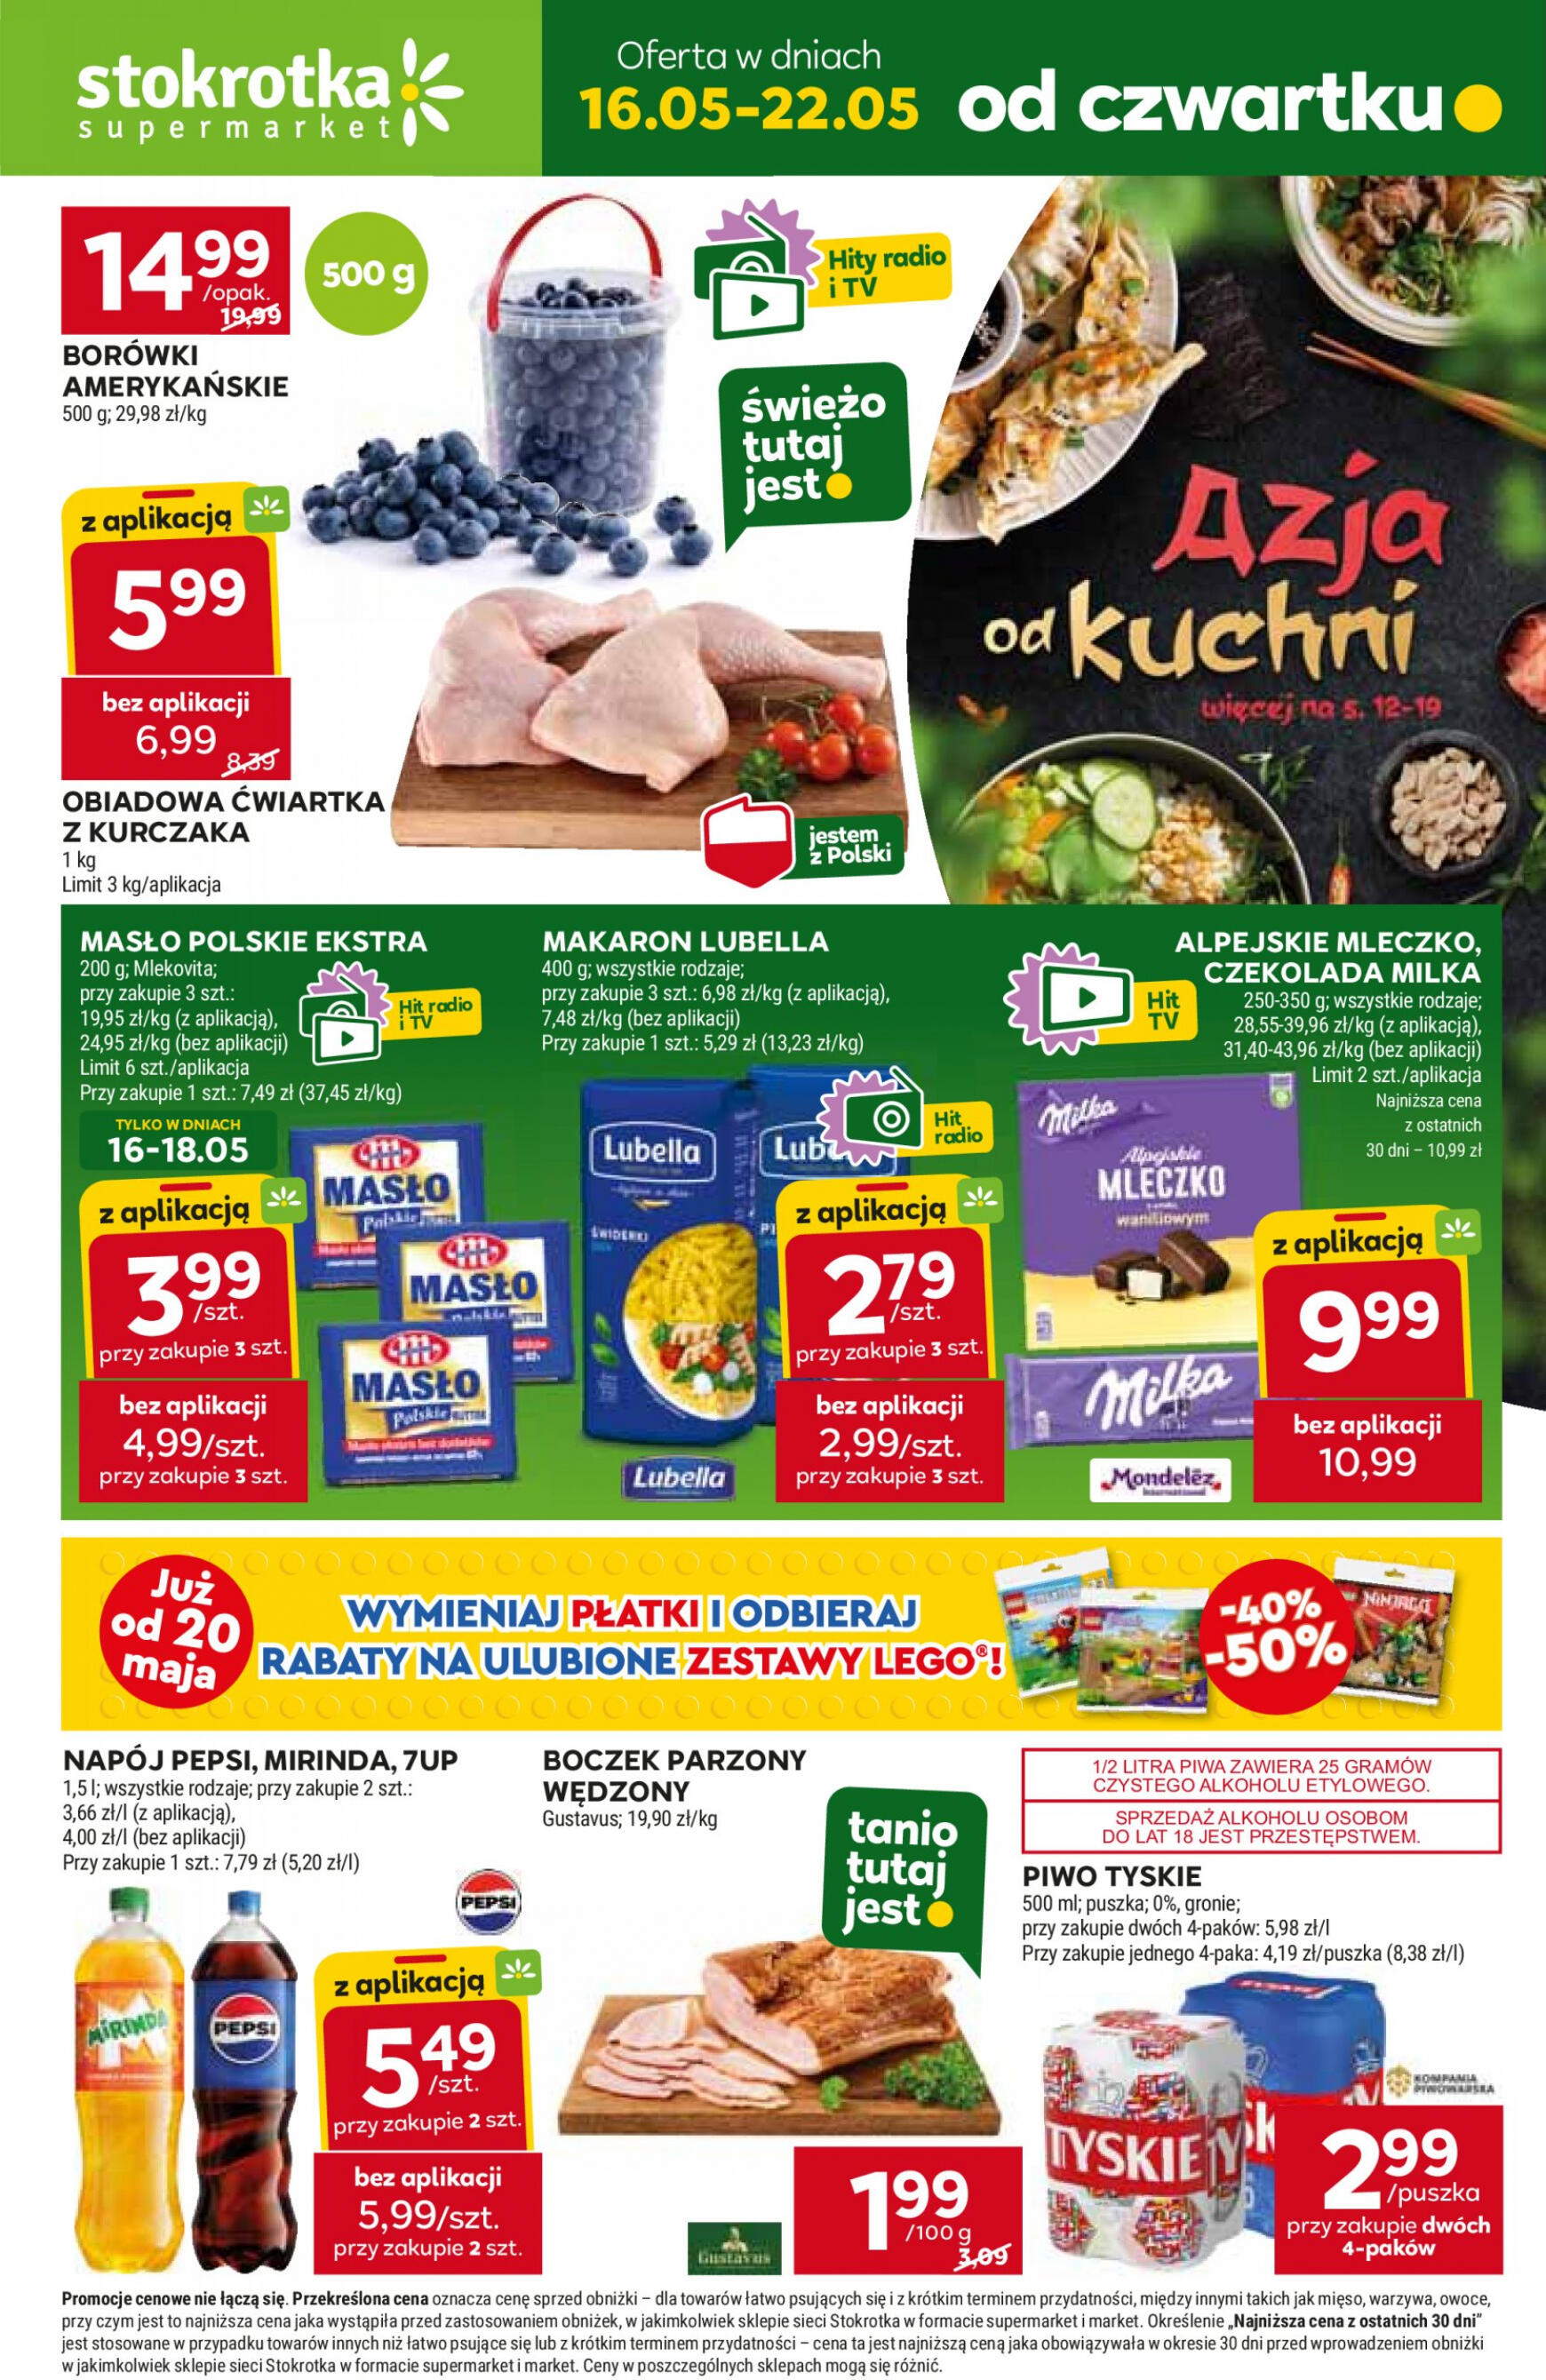 stokrotka - Stokrotka - Supermarket gazetka aktualna ważna od 16.05. - 22.05. - page: 1